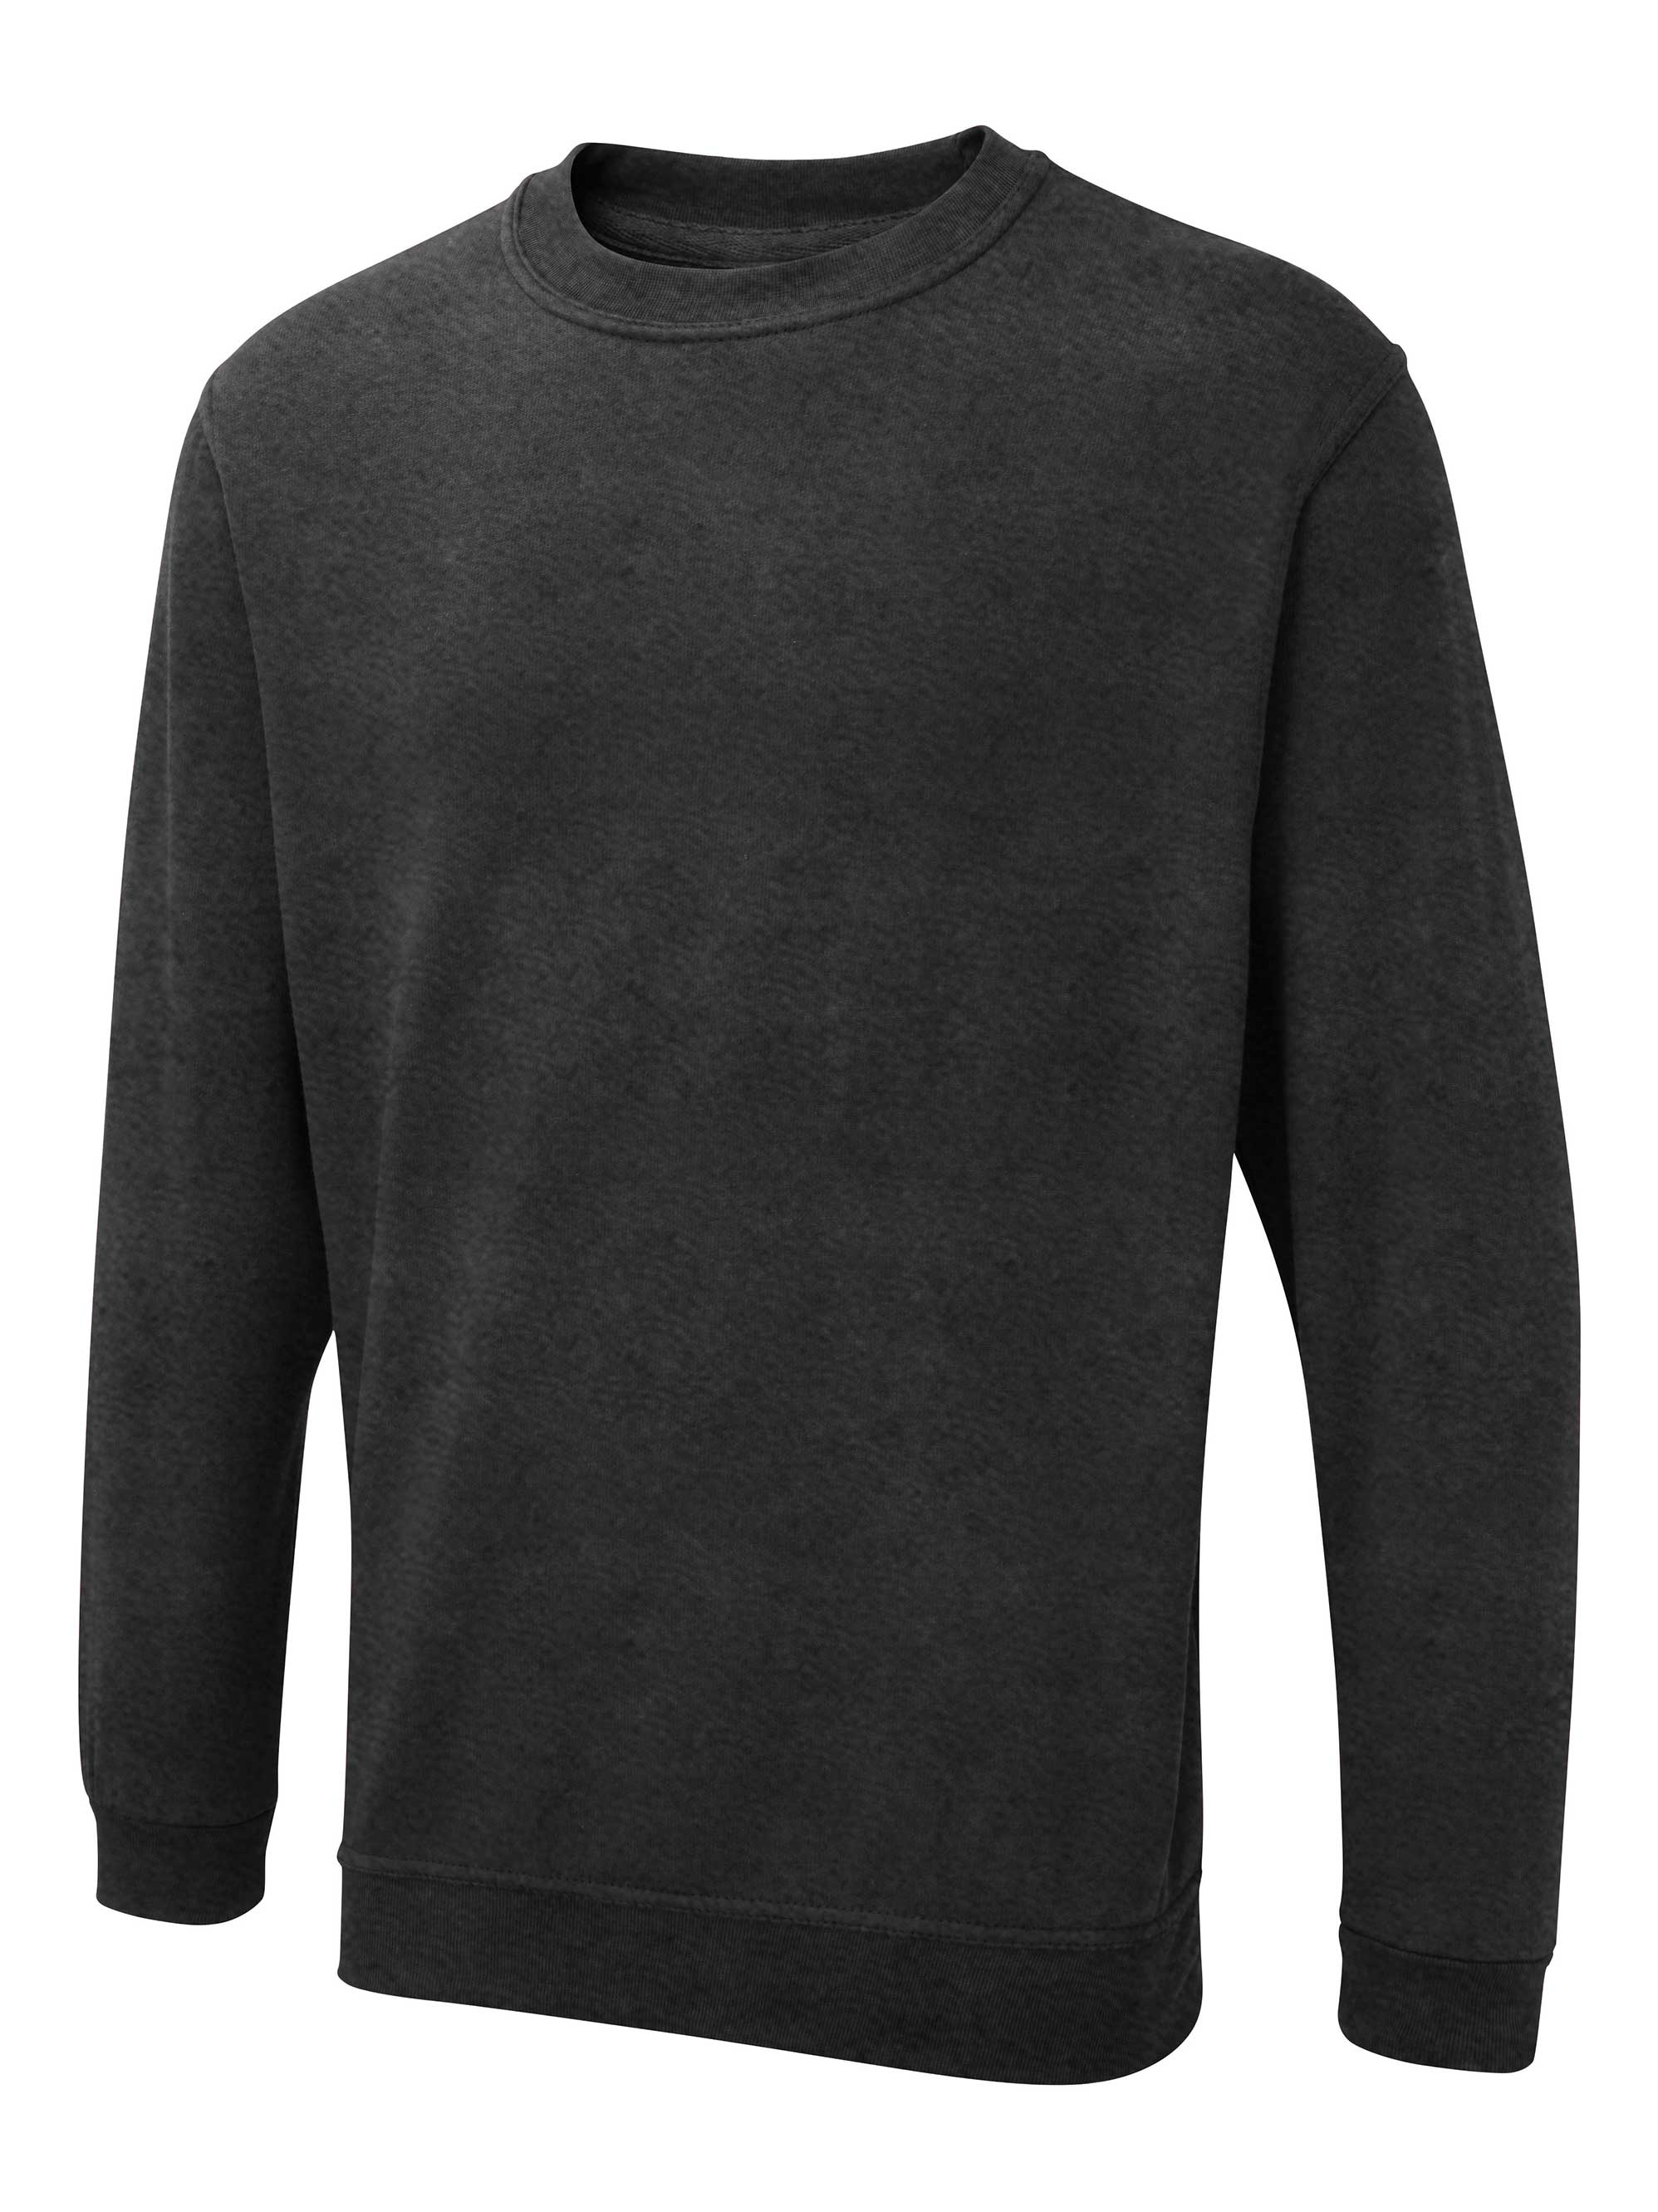 Uneek The UX Sweatshirt - ux3 (Charcoal)